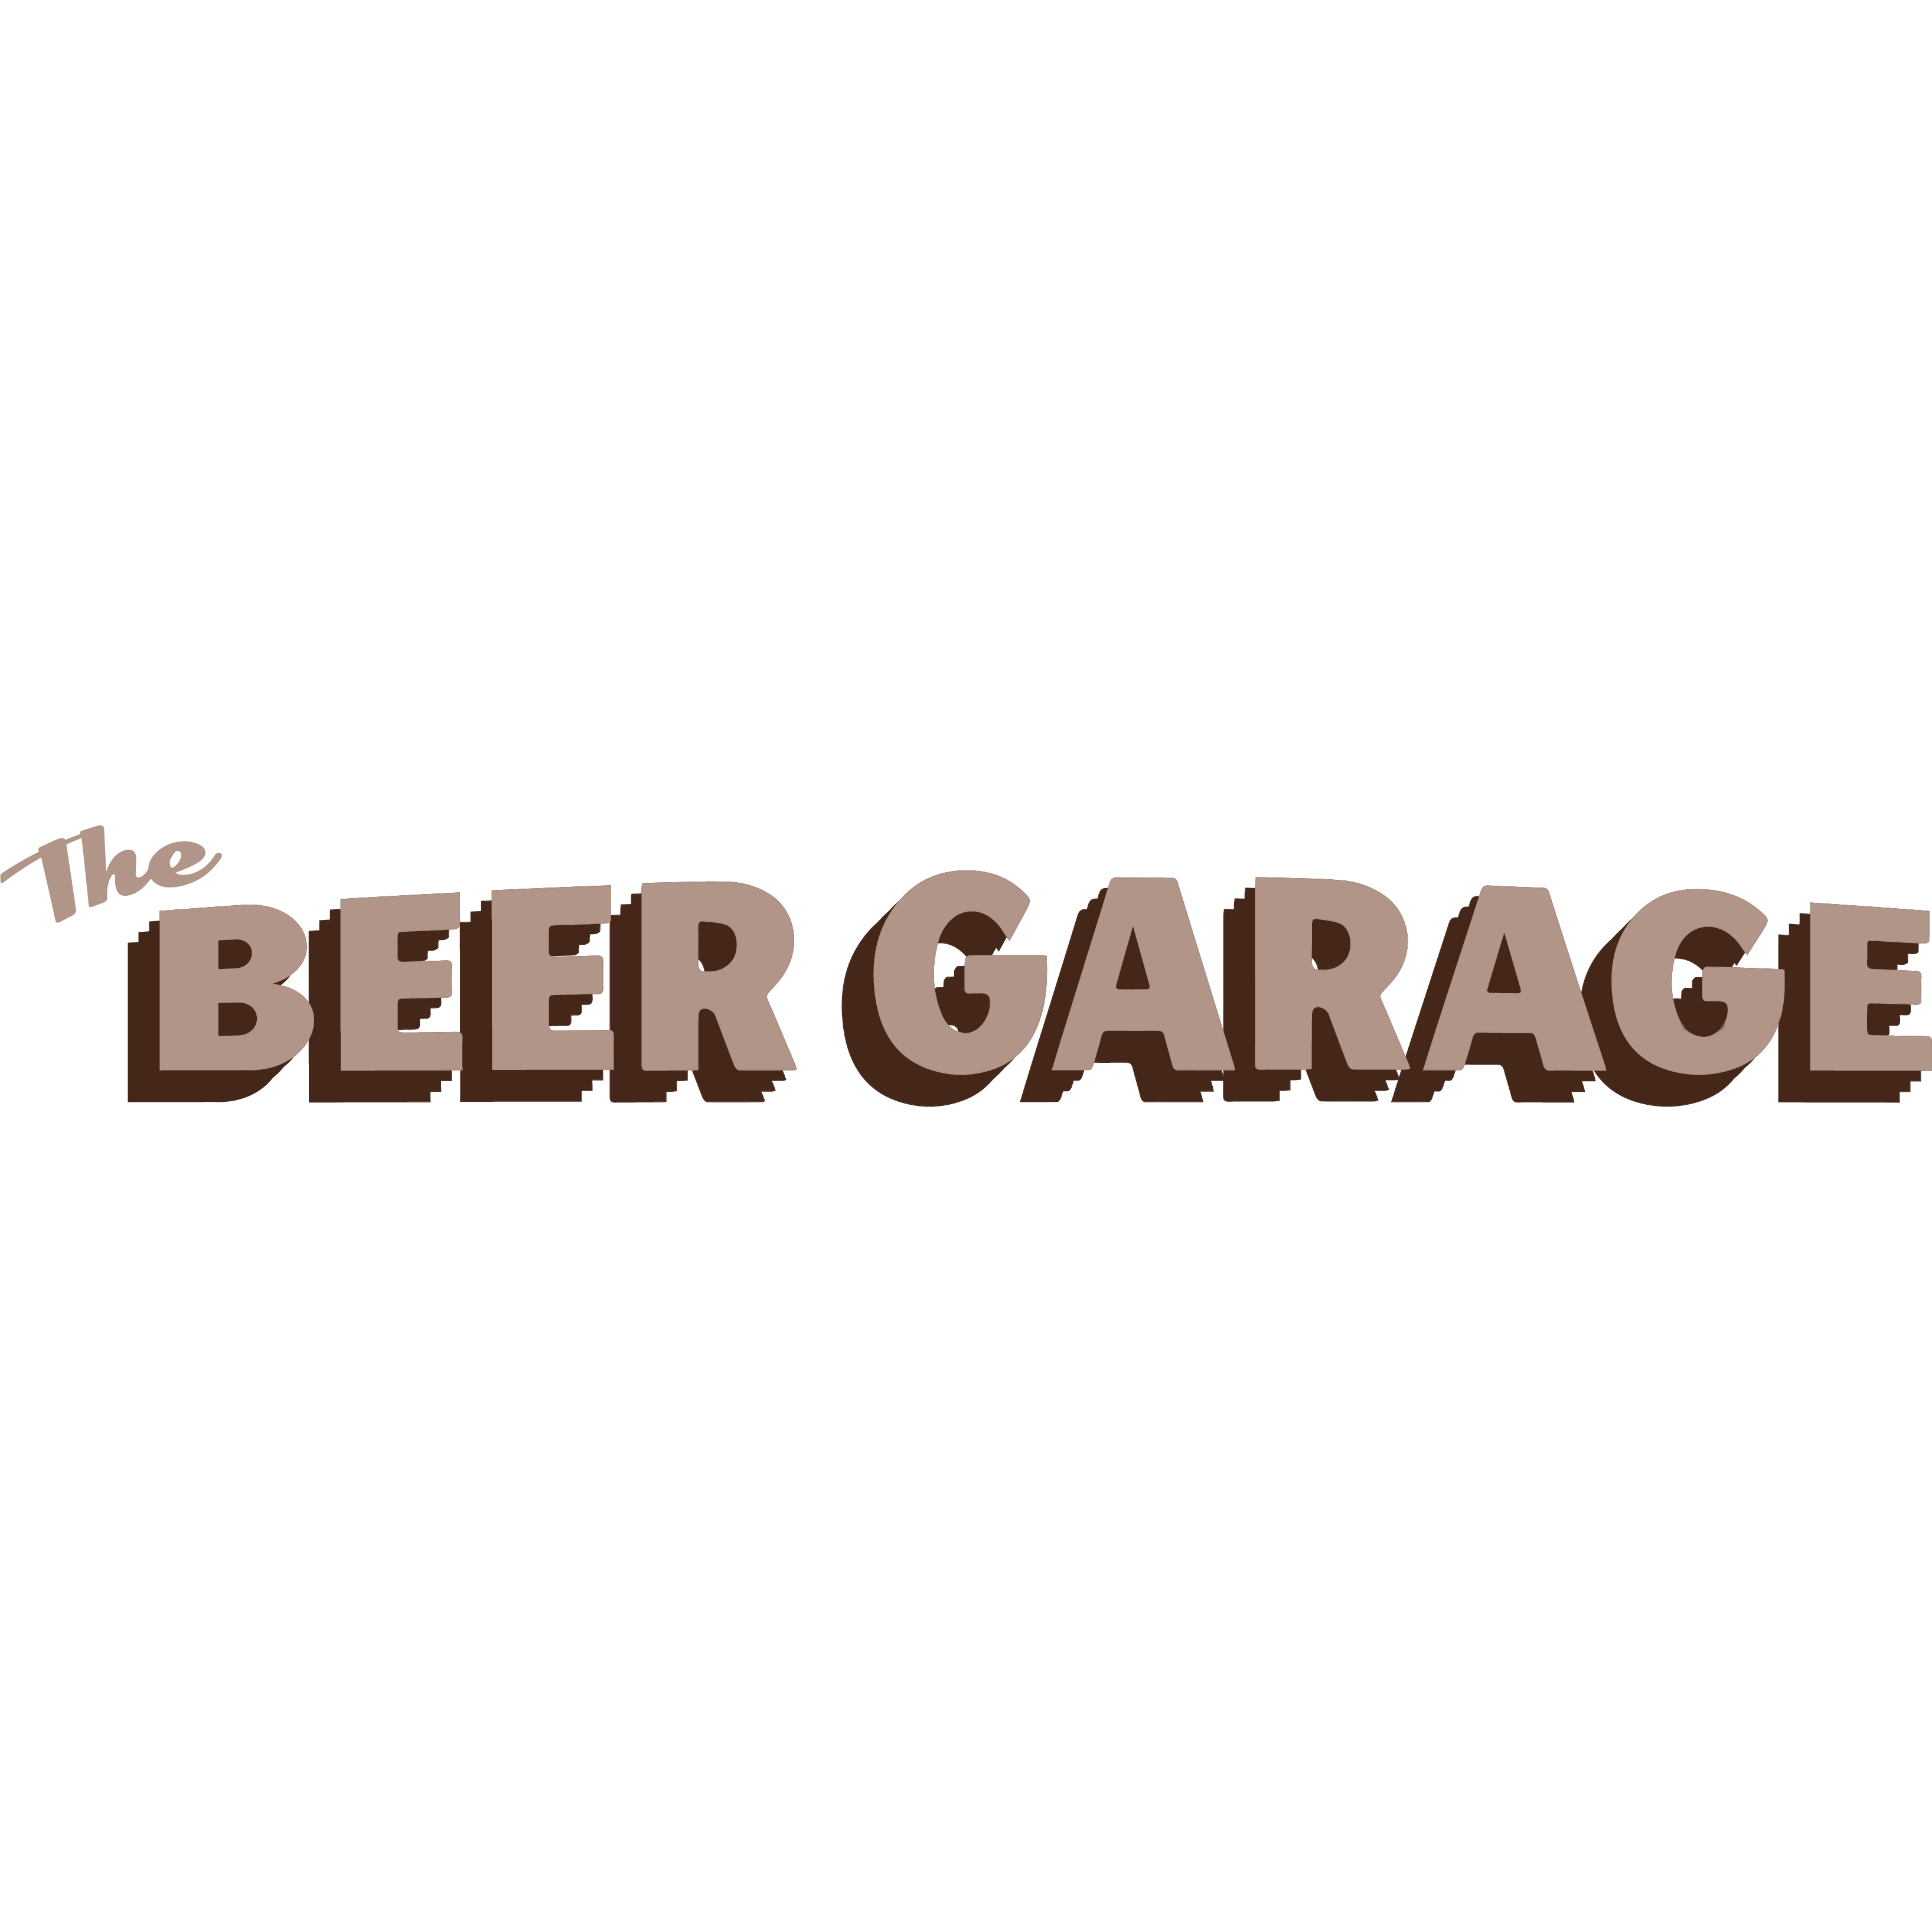 The Beer Garage